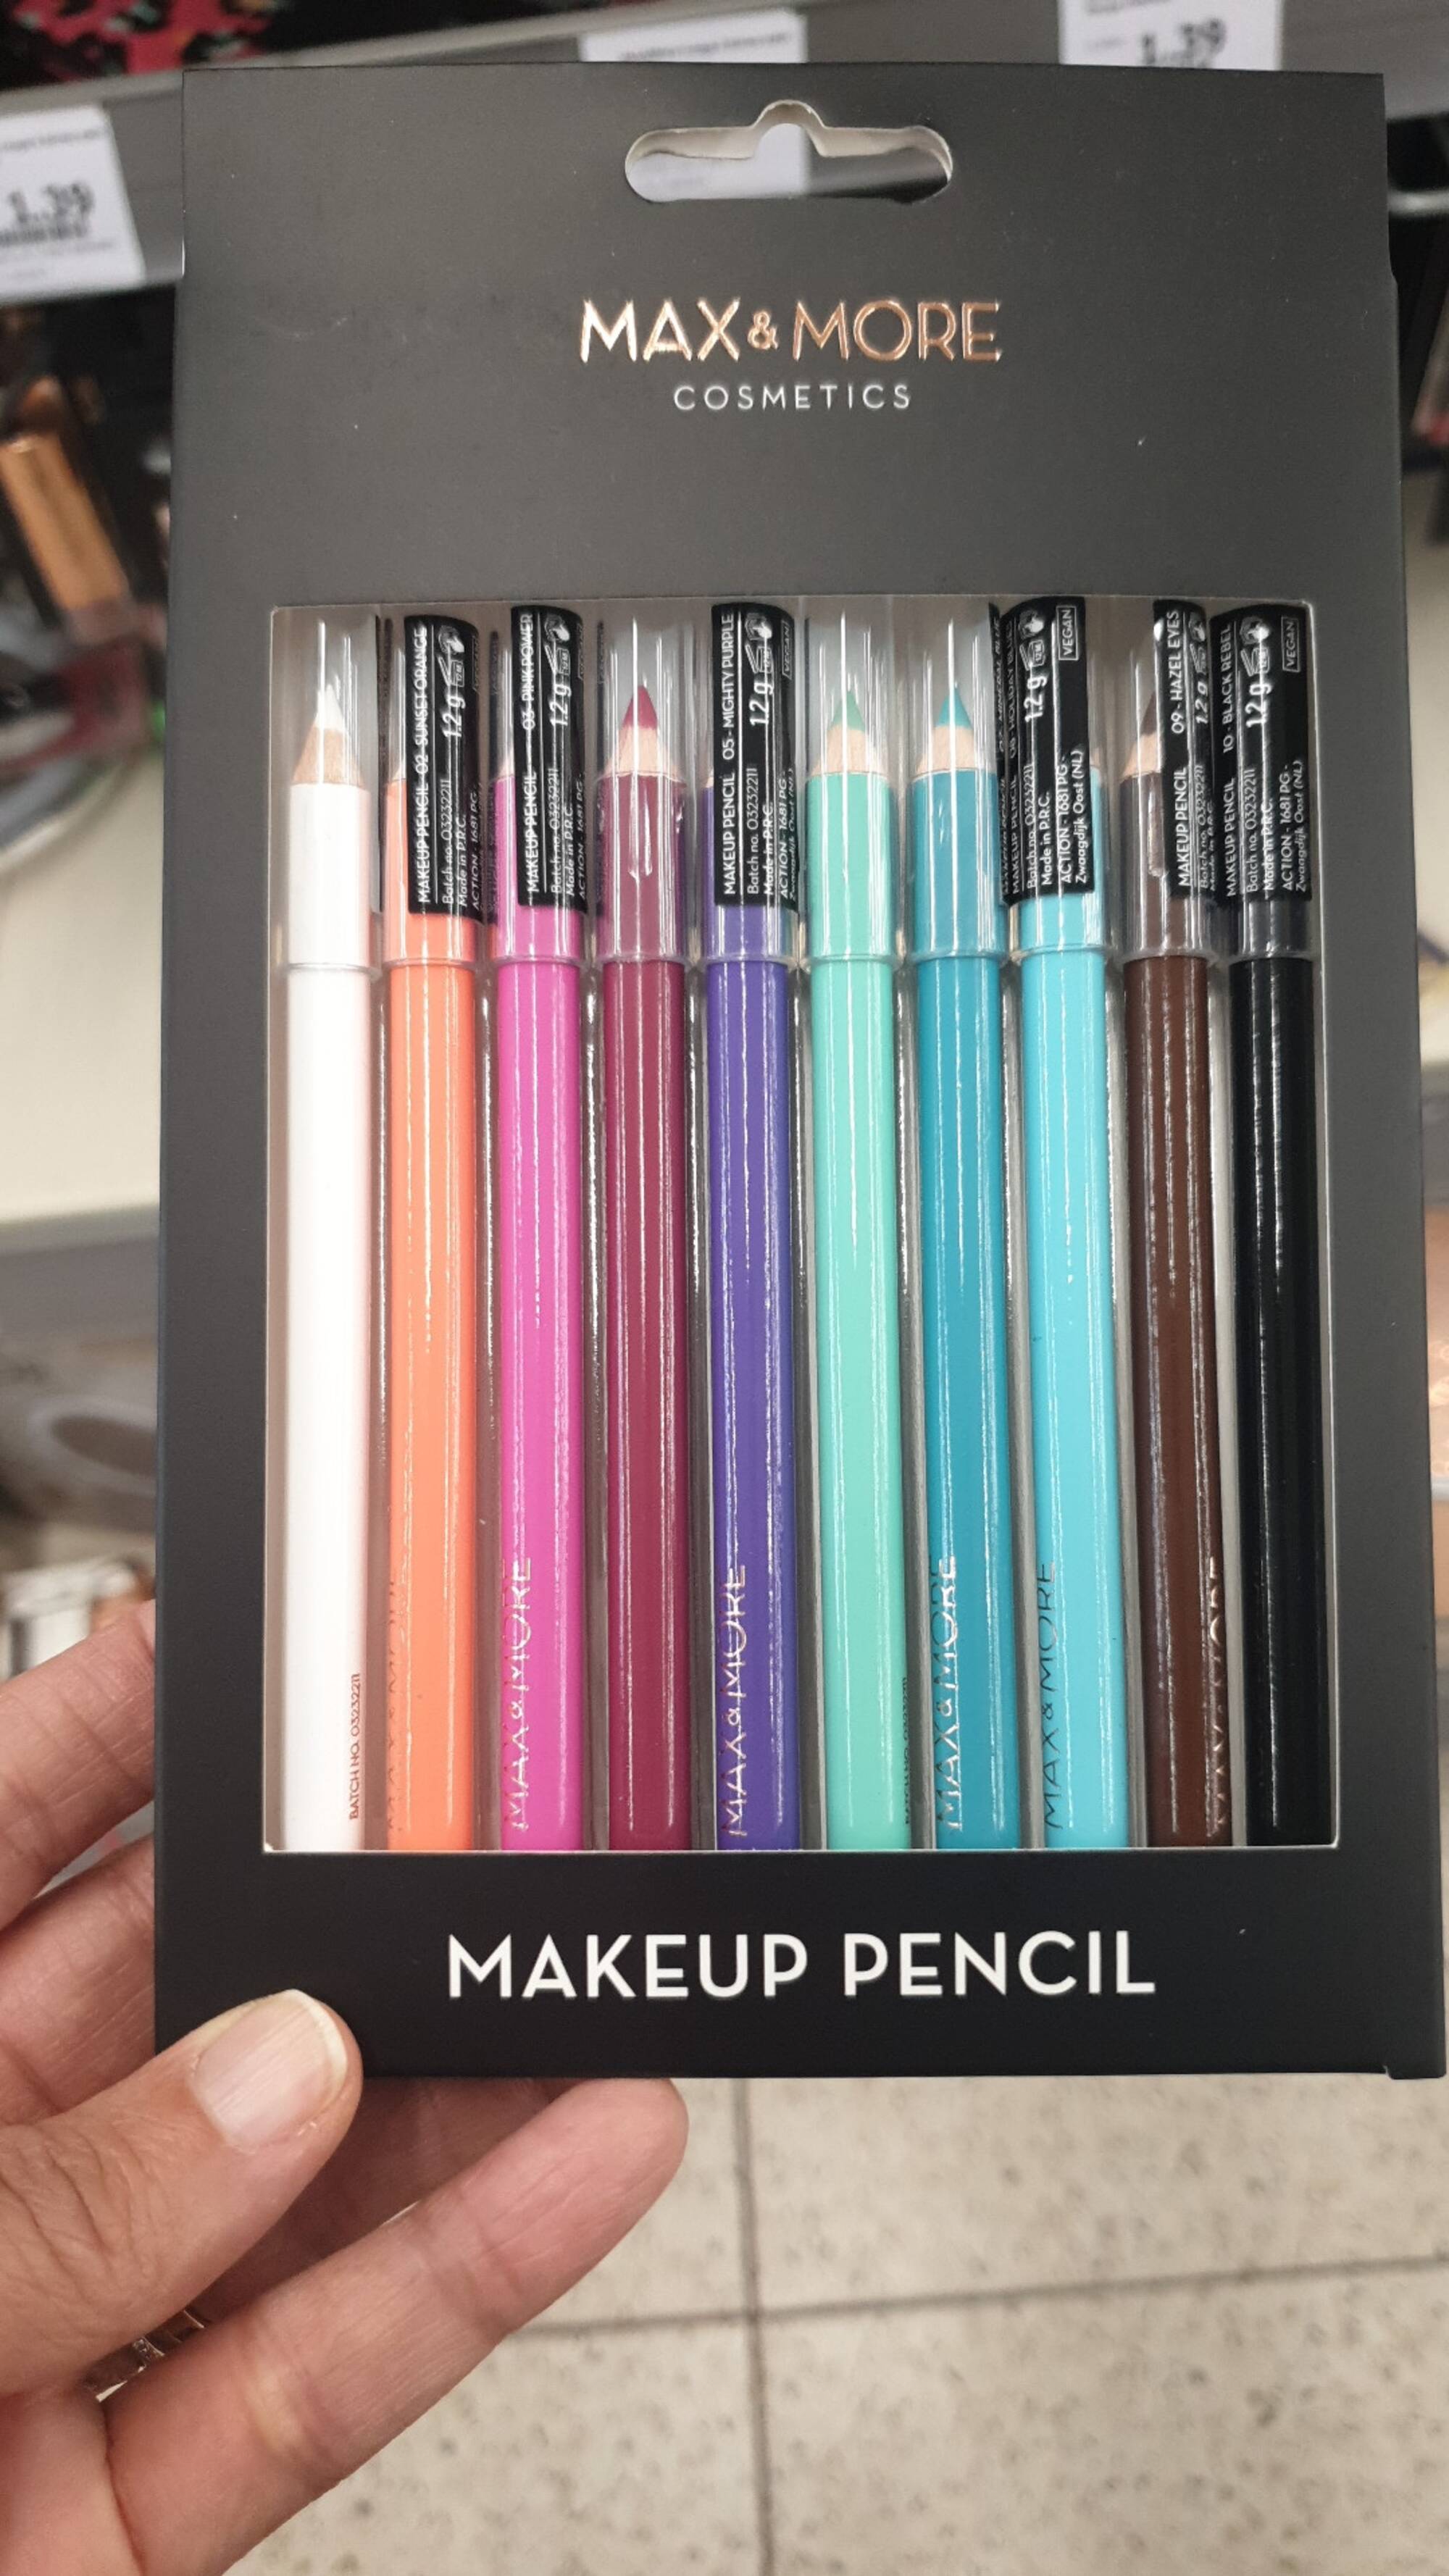 MAX & MORE - Makeup pencil